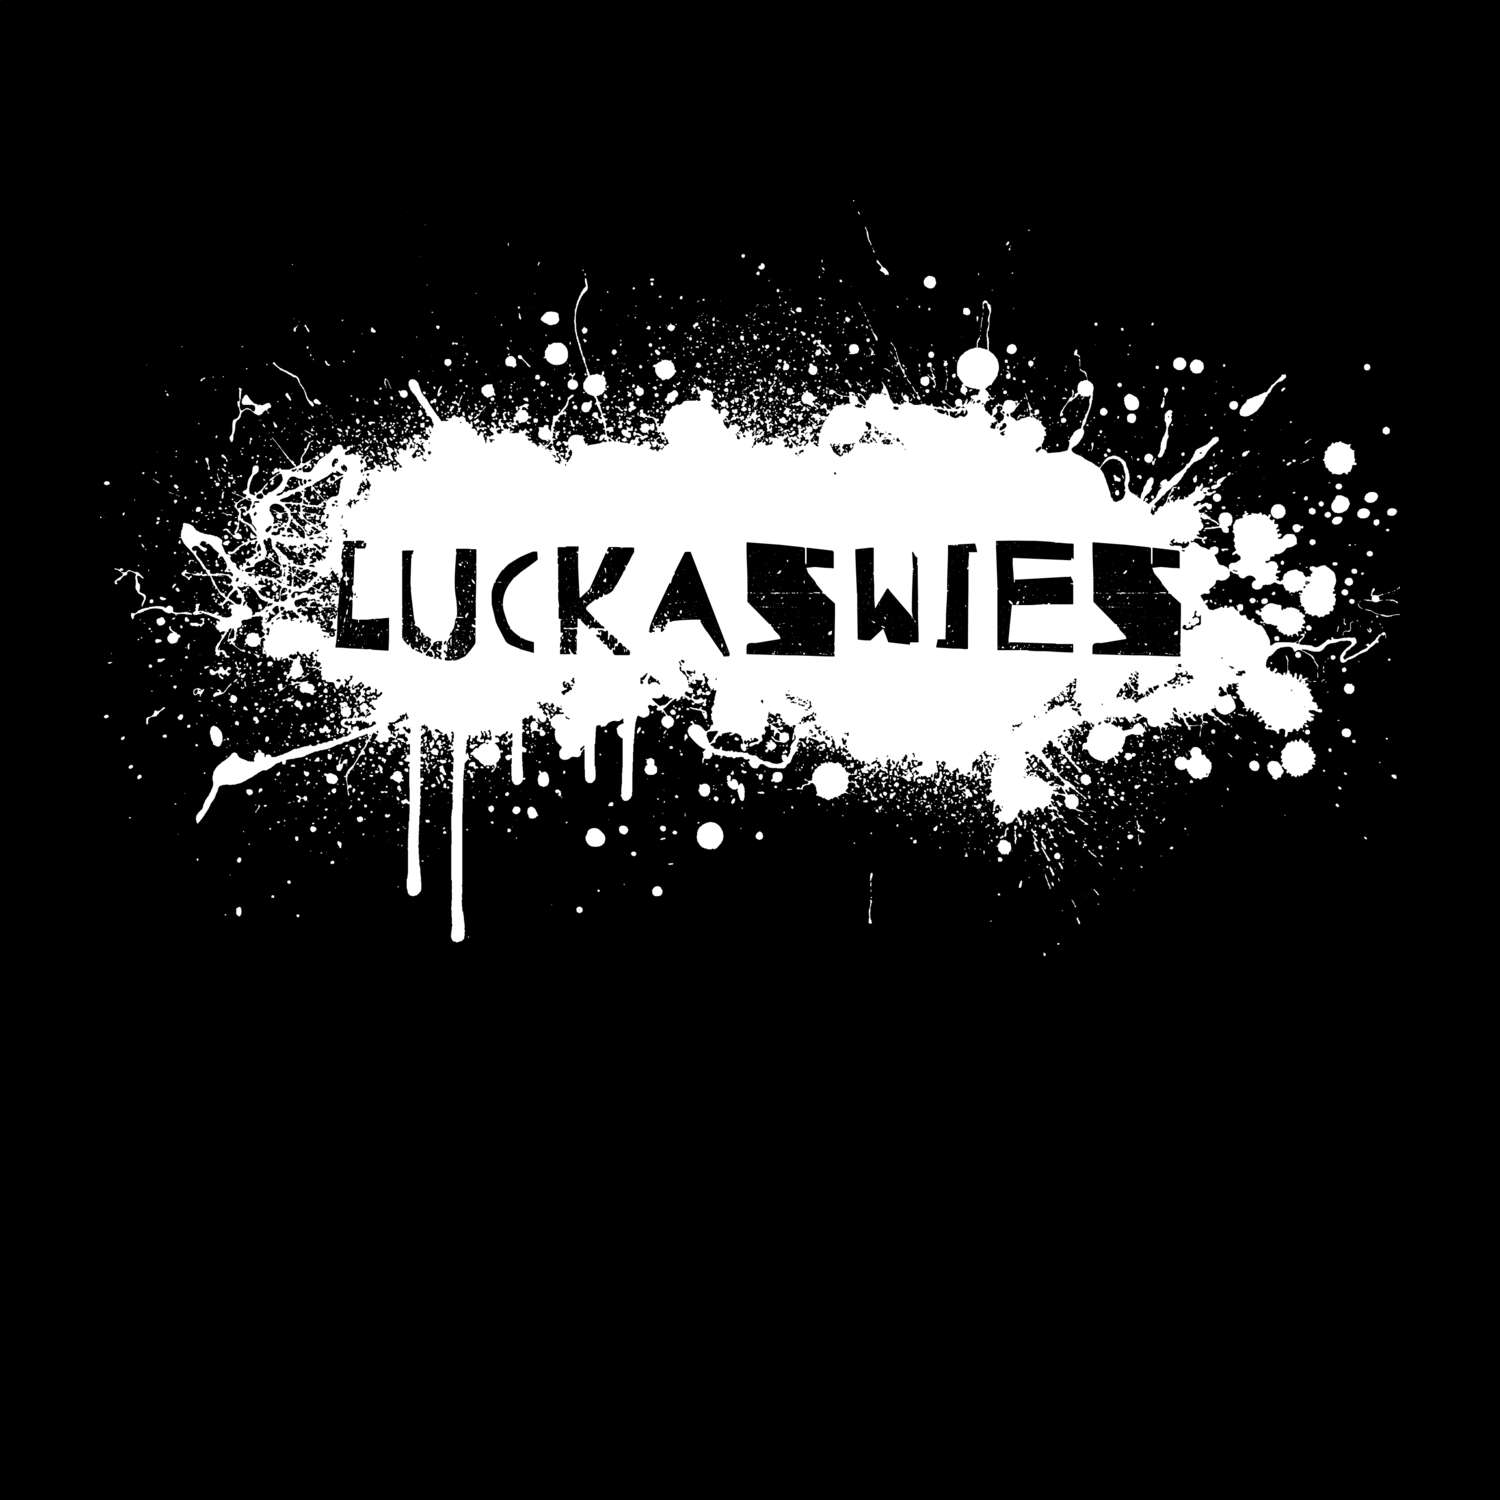 Luckaswies T-Shirt »Paint Splash Punk«